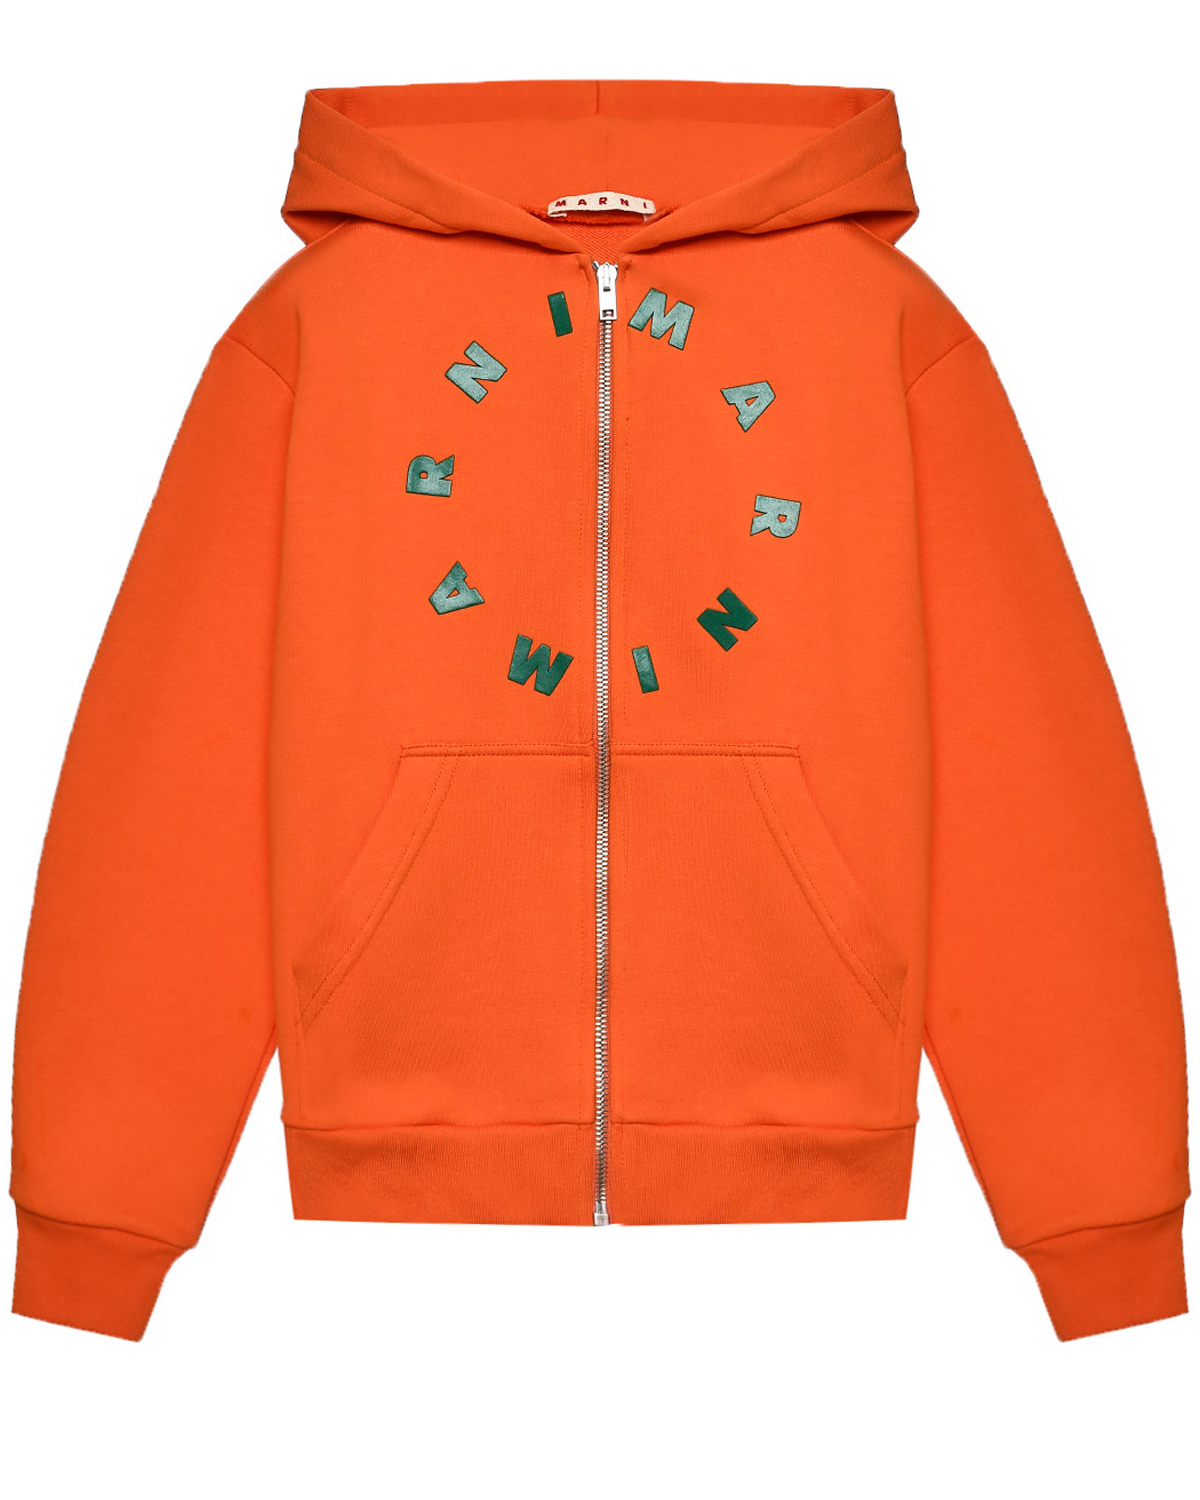 Спортивная куртка с лого, оранжевая MARNI, размер 116, цвет оранжевый